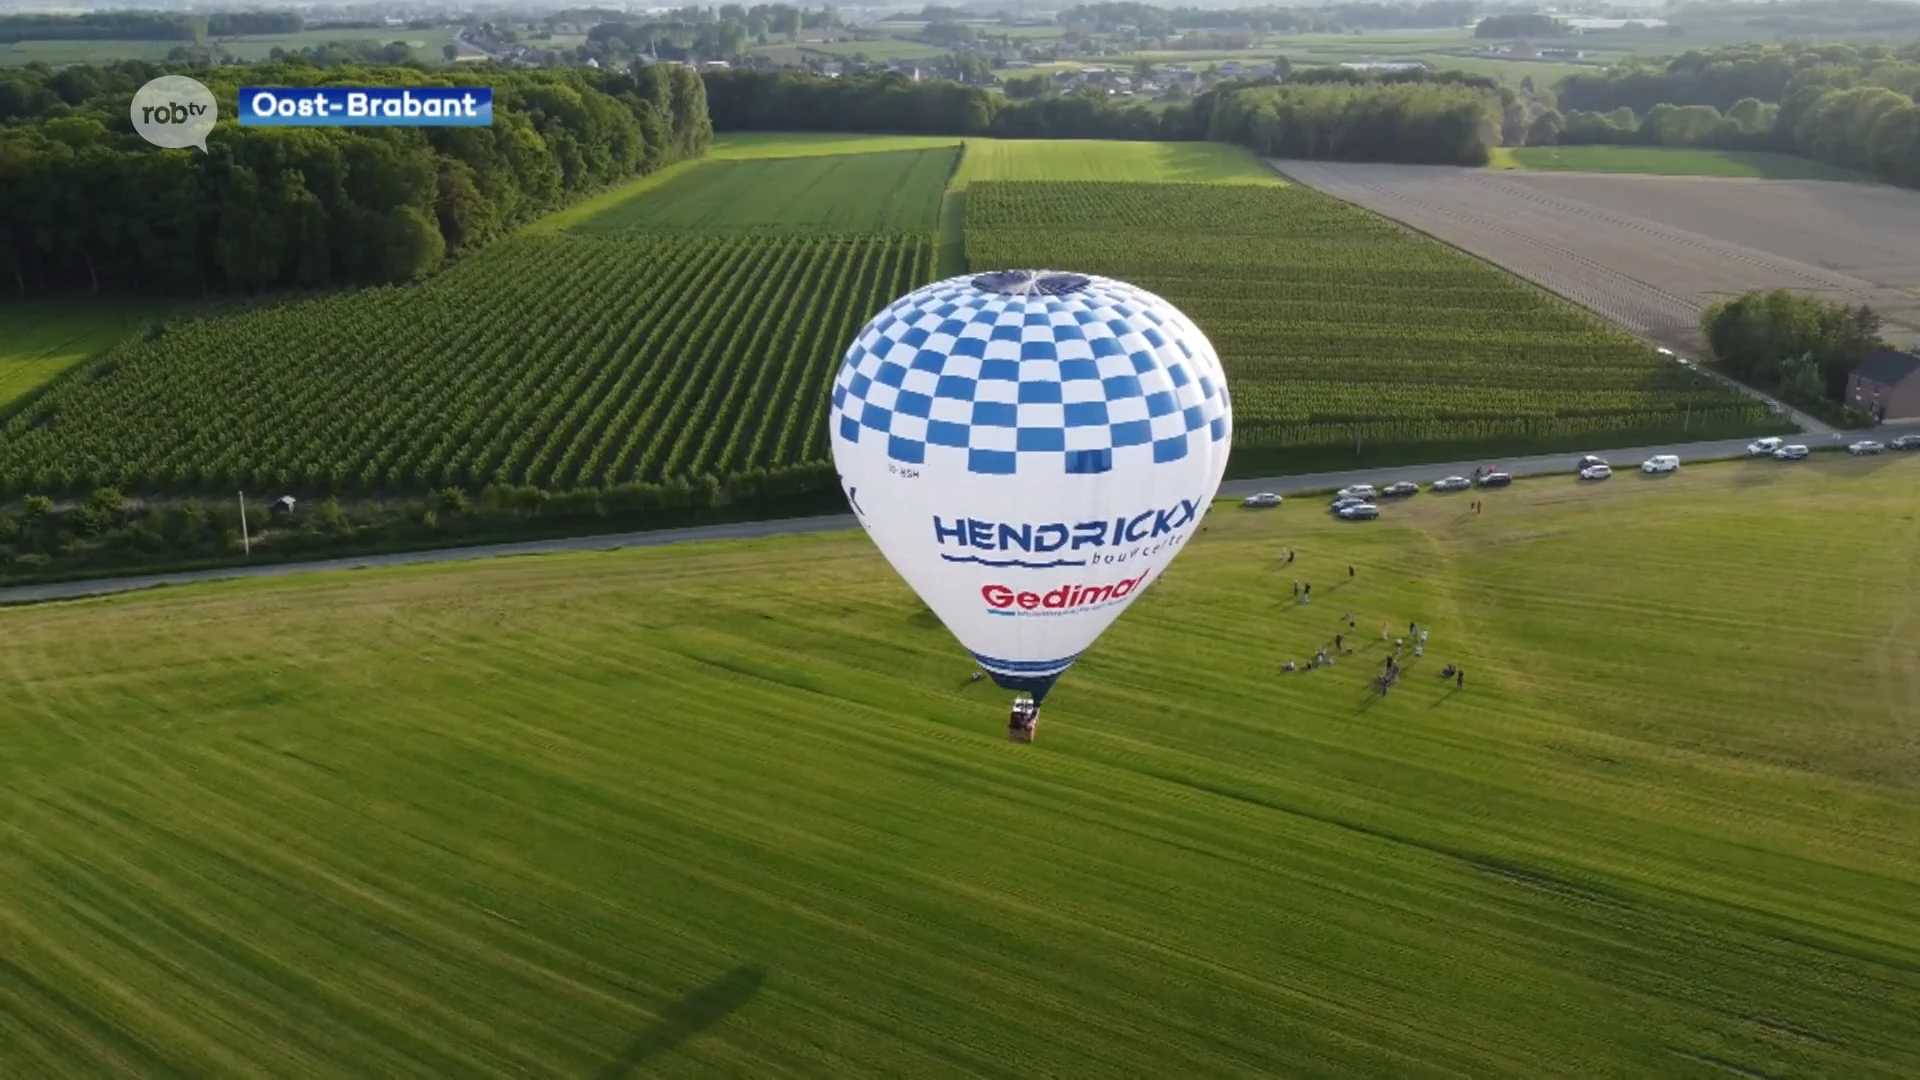 Marieke maakt haar droom waar, met een luchtballon over de regio vliegen